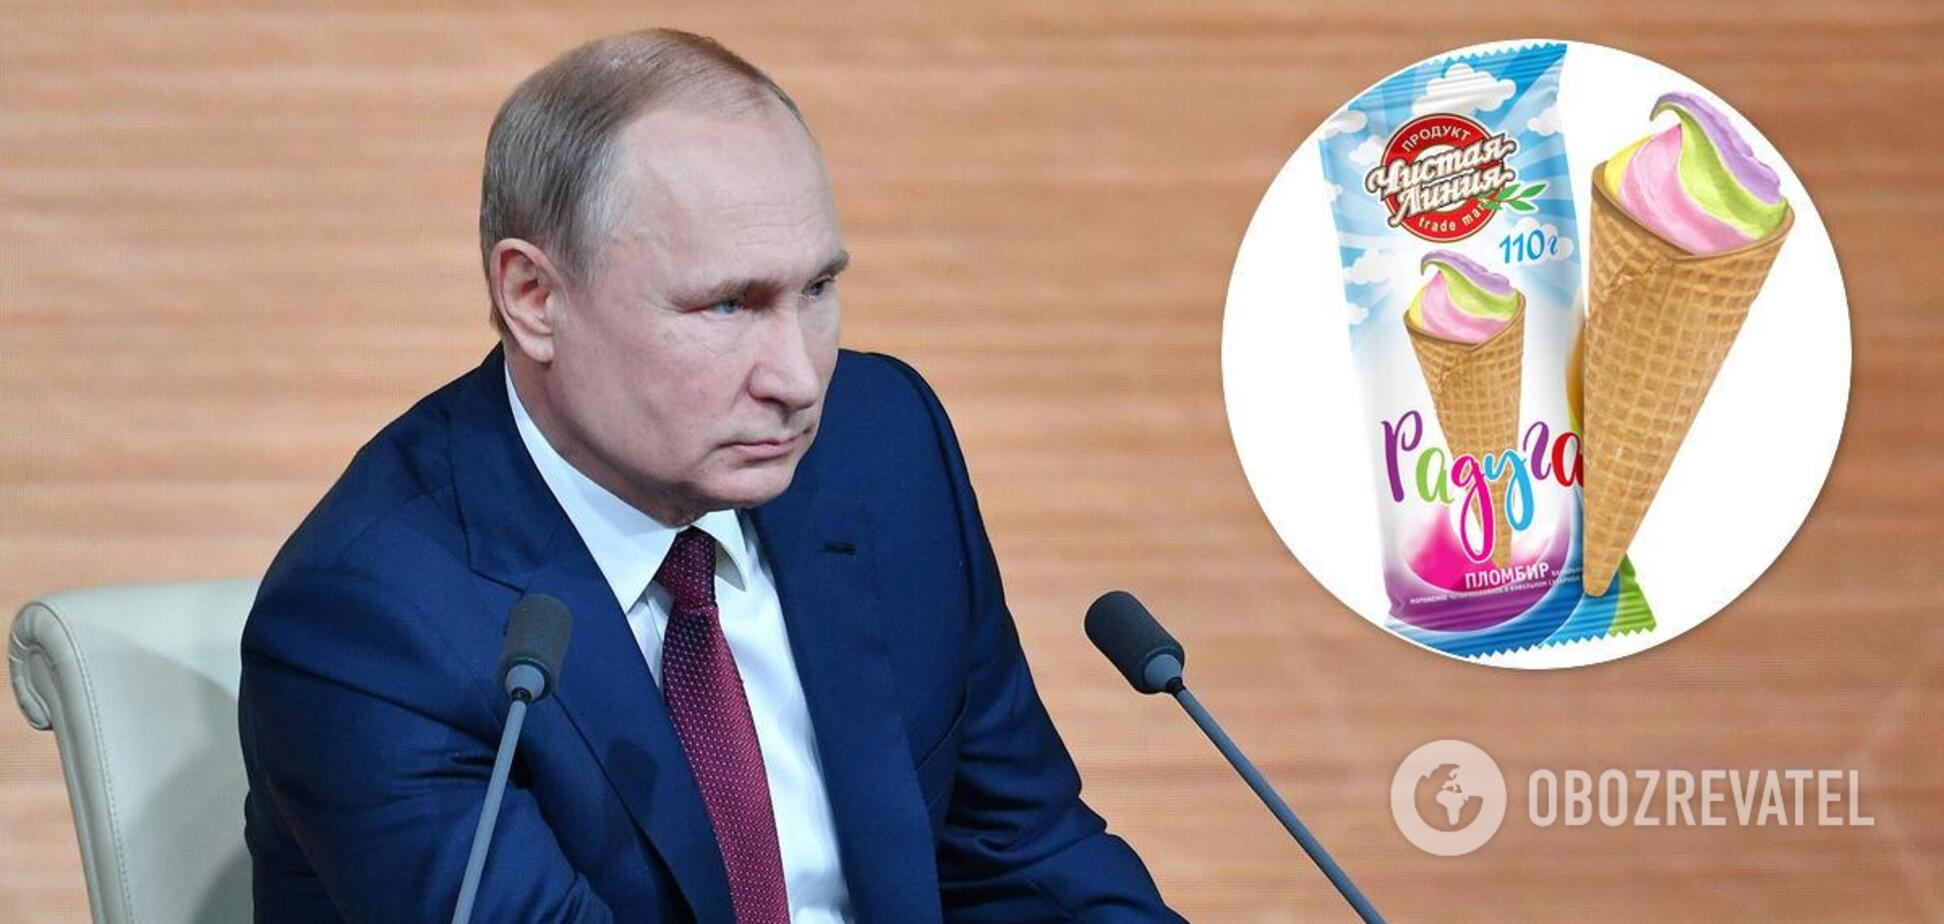 Путина высмеяли из-за скандала с мороженым 'Радуга'